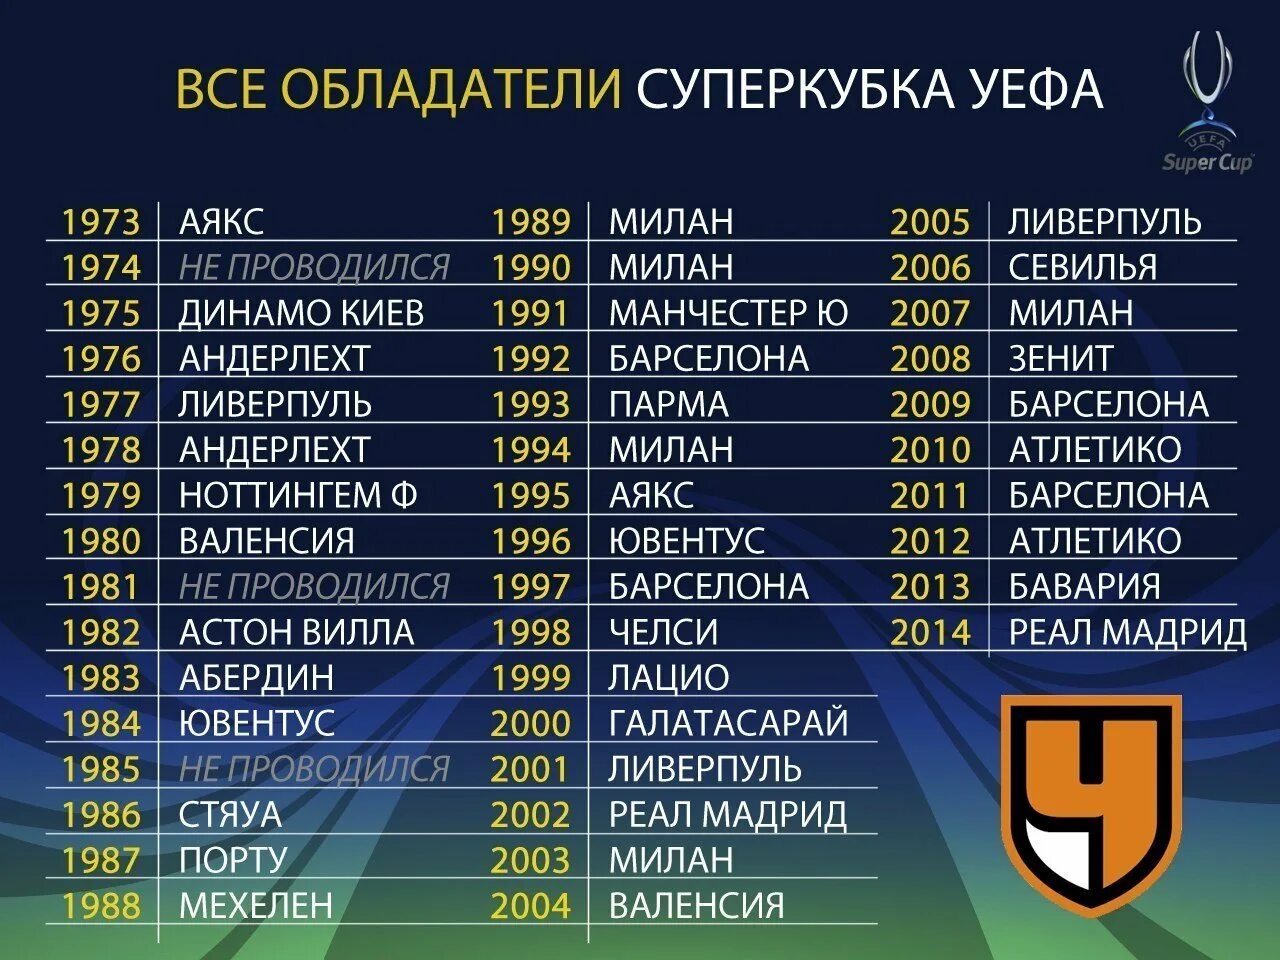 Победители Суперкубка УЕФА по годам. Список чемпионов по футболу за всю историю.